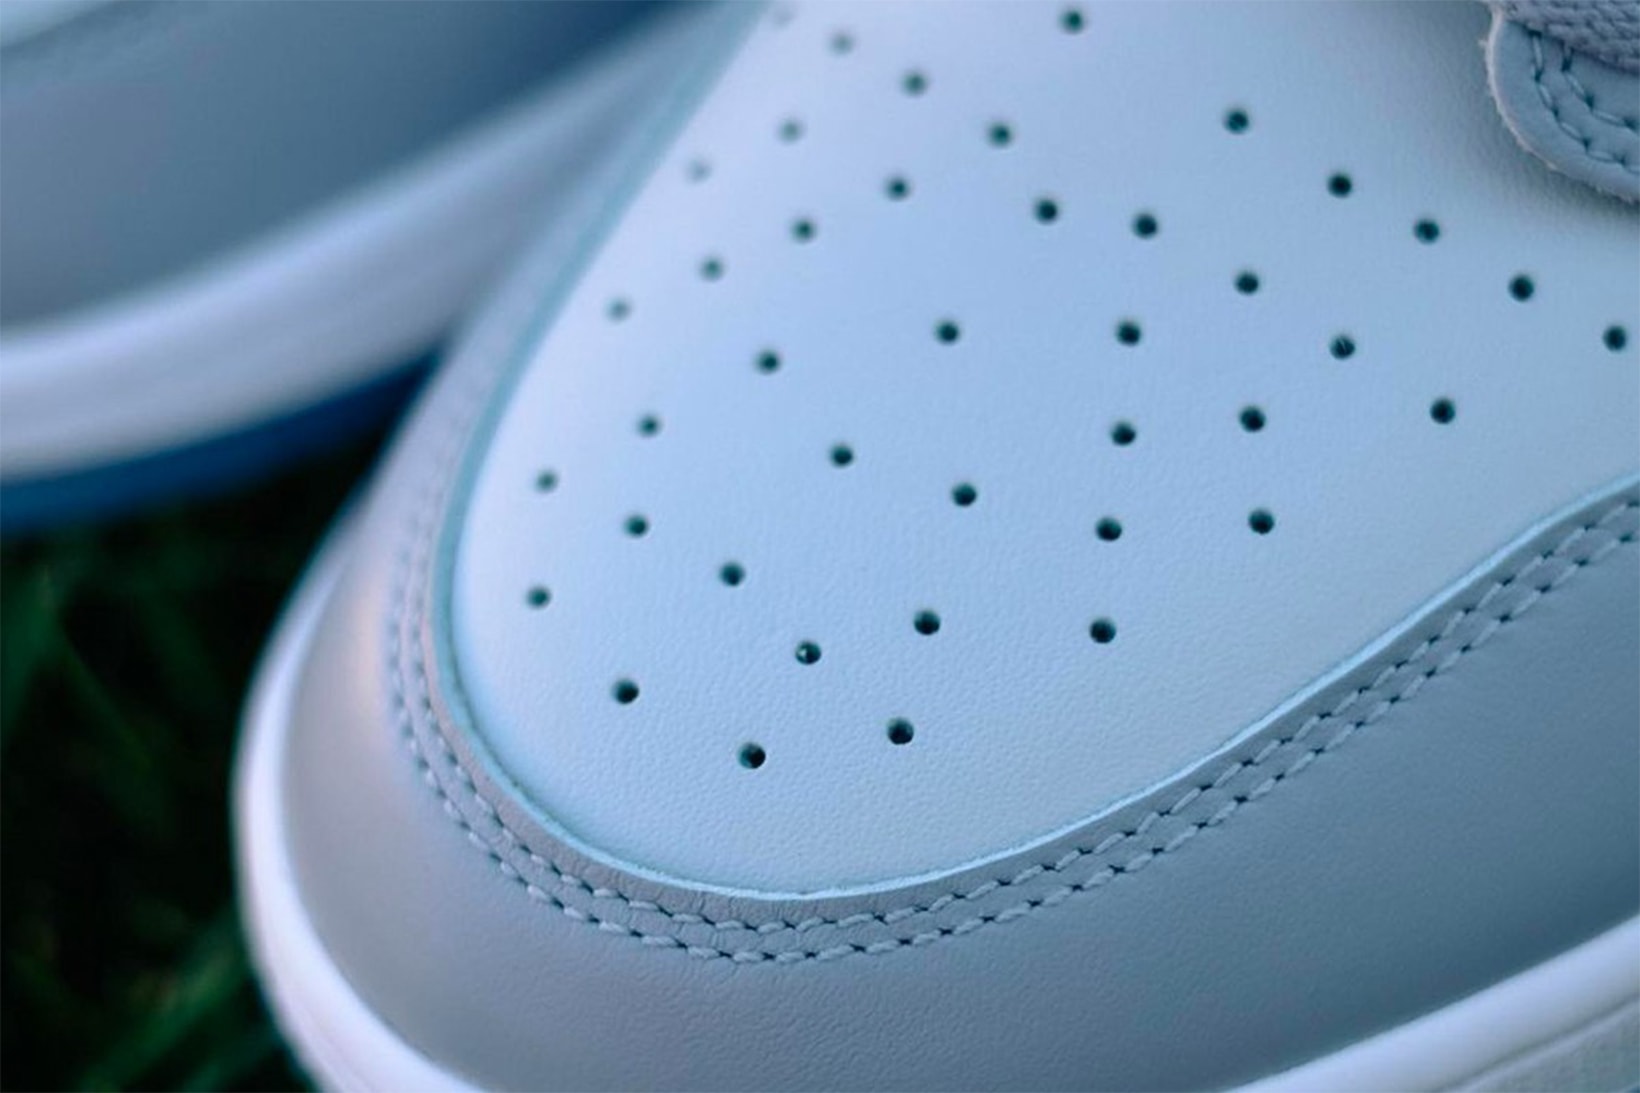 Nike Air Jordan 1 Low Golf Sneakers "Wolf Grey" Michael Jordan Toe Boxes Details